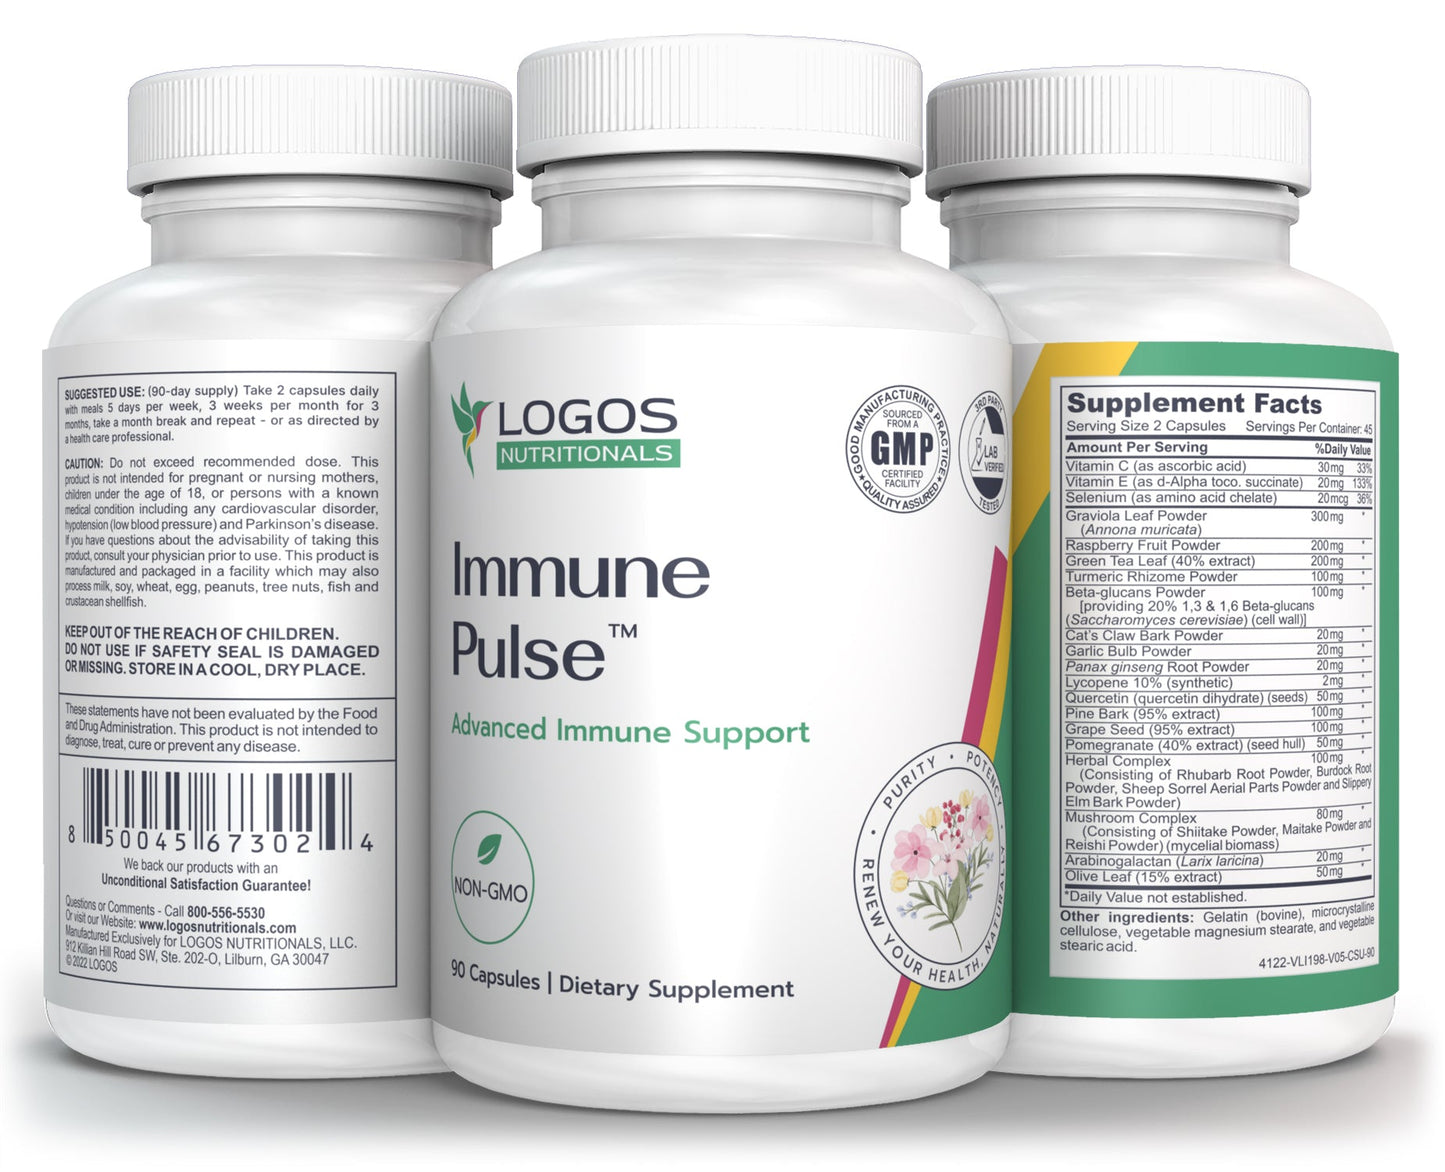 Immune Pulse™